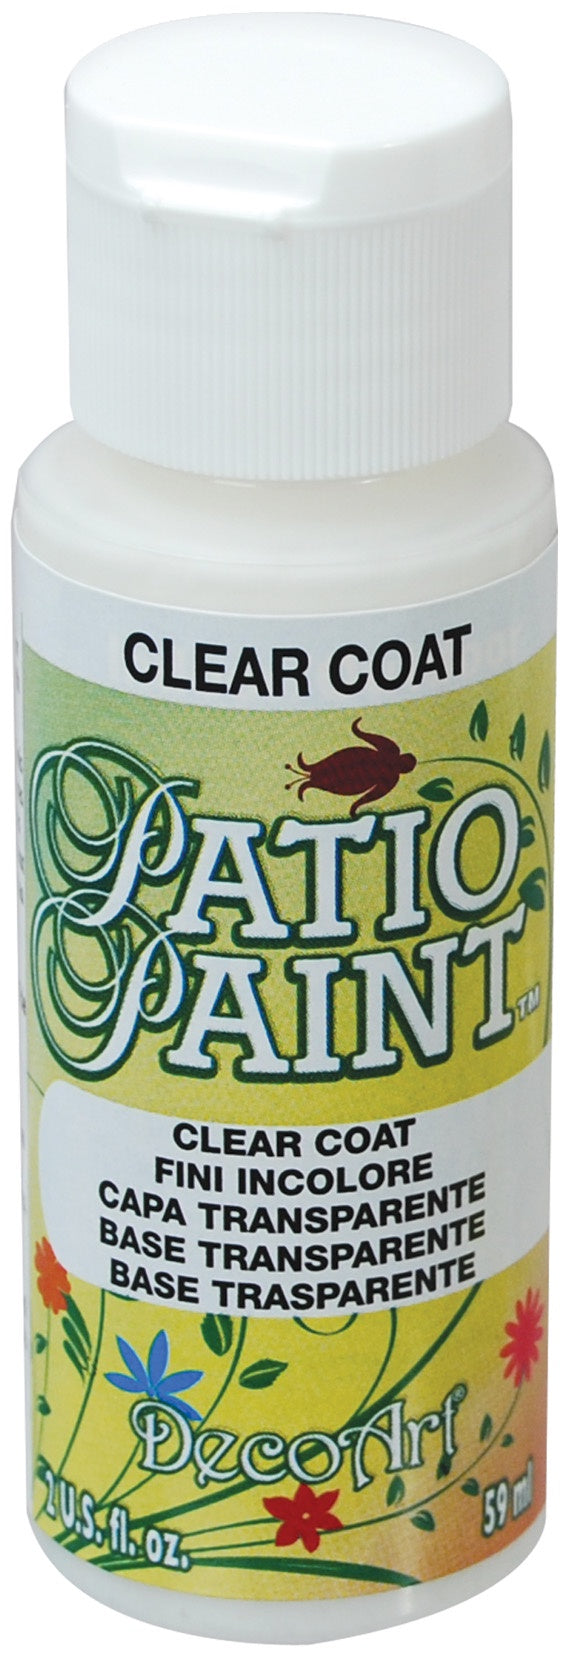 Deco Art Patio Paint 2oz - Clear Coat